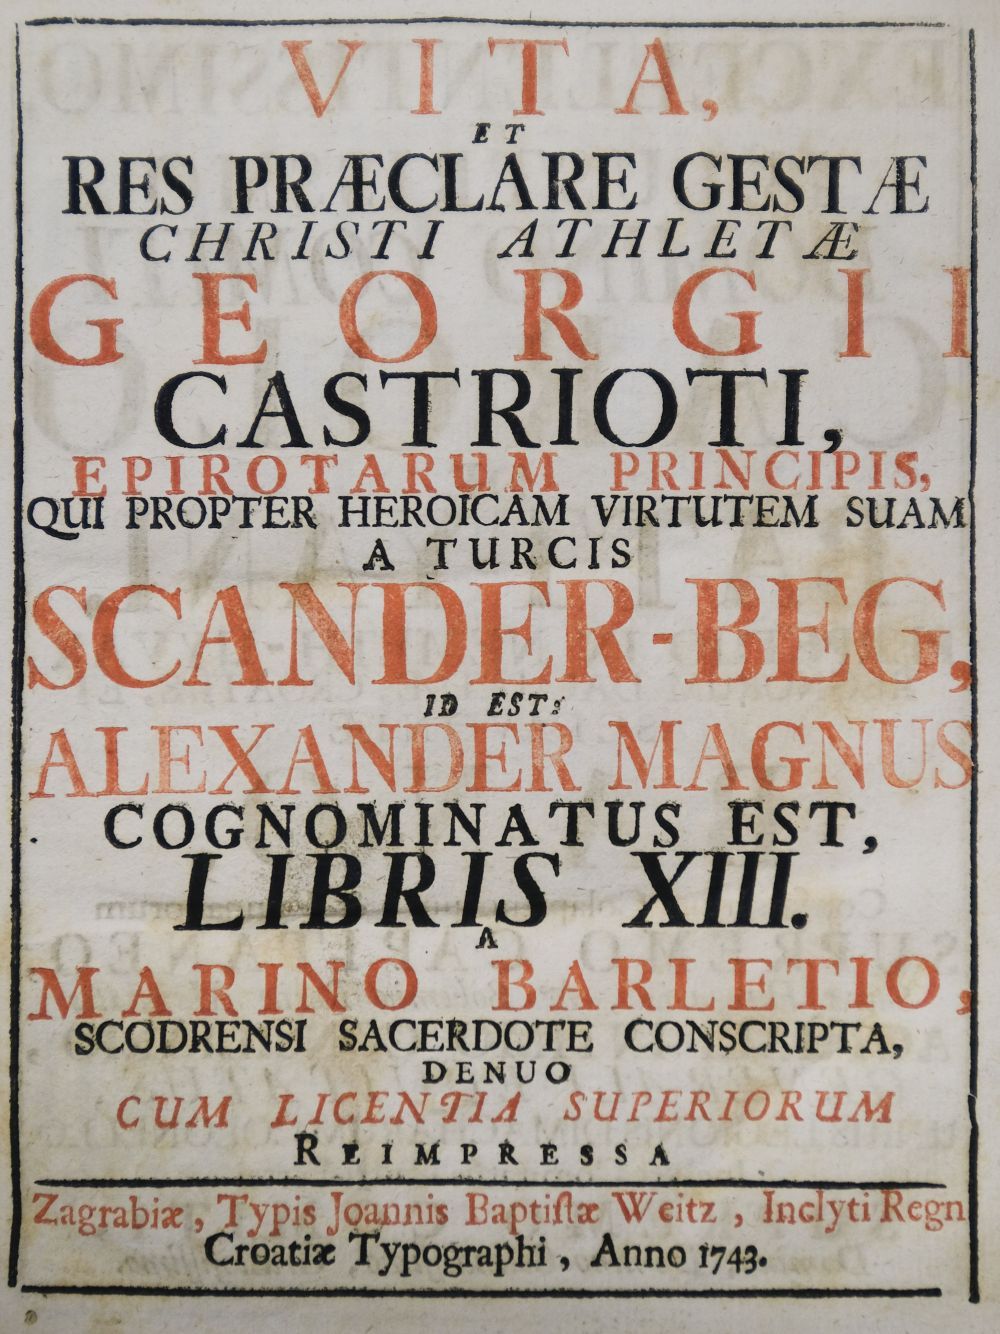 Barletius (Marinus). Vita et res præclare gestæ, 1743